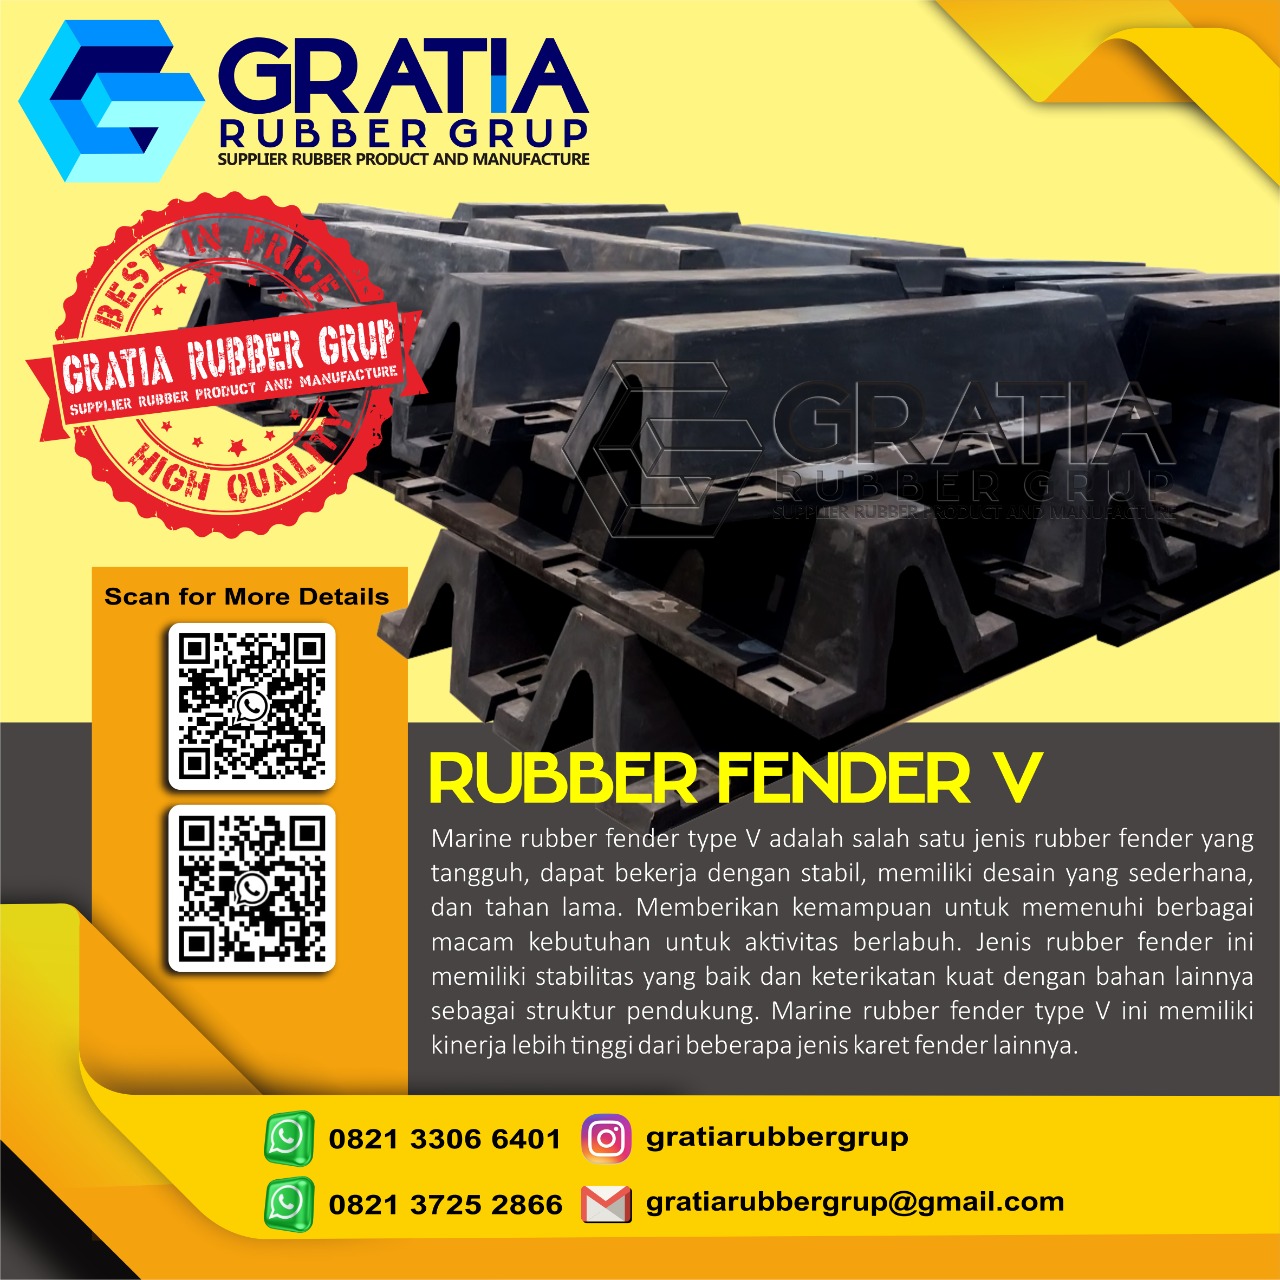 Harga Rubber Fender Berkualitas  Melayani Pengiriman Ke Pagar Alam Sumatera Selatan Hub 0821 3306 0461